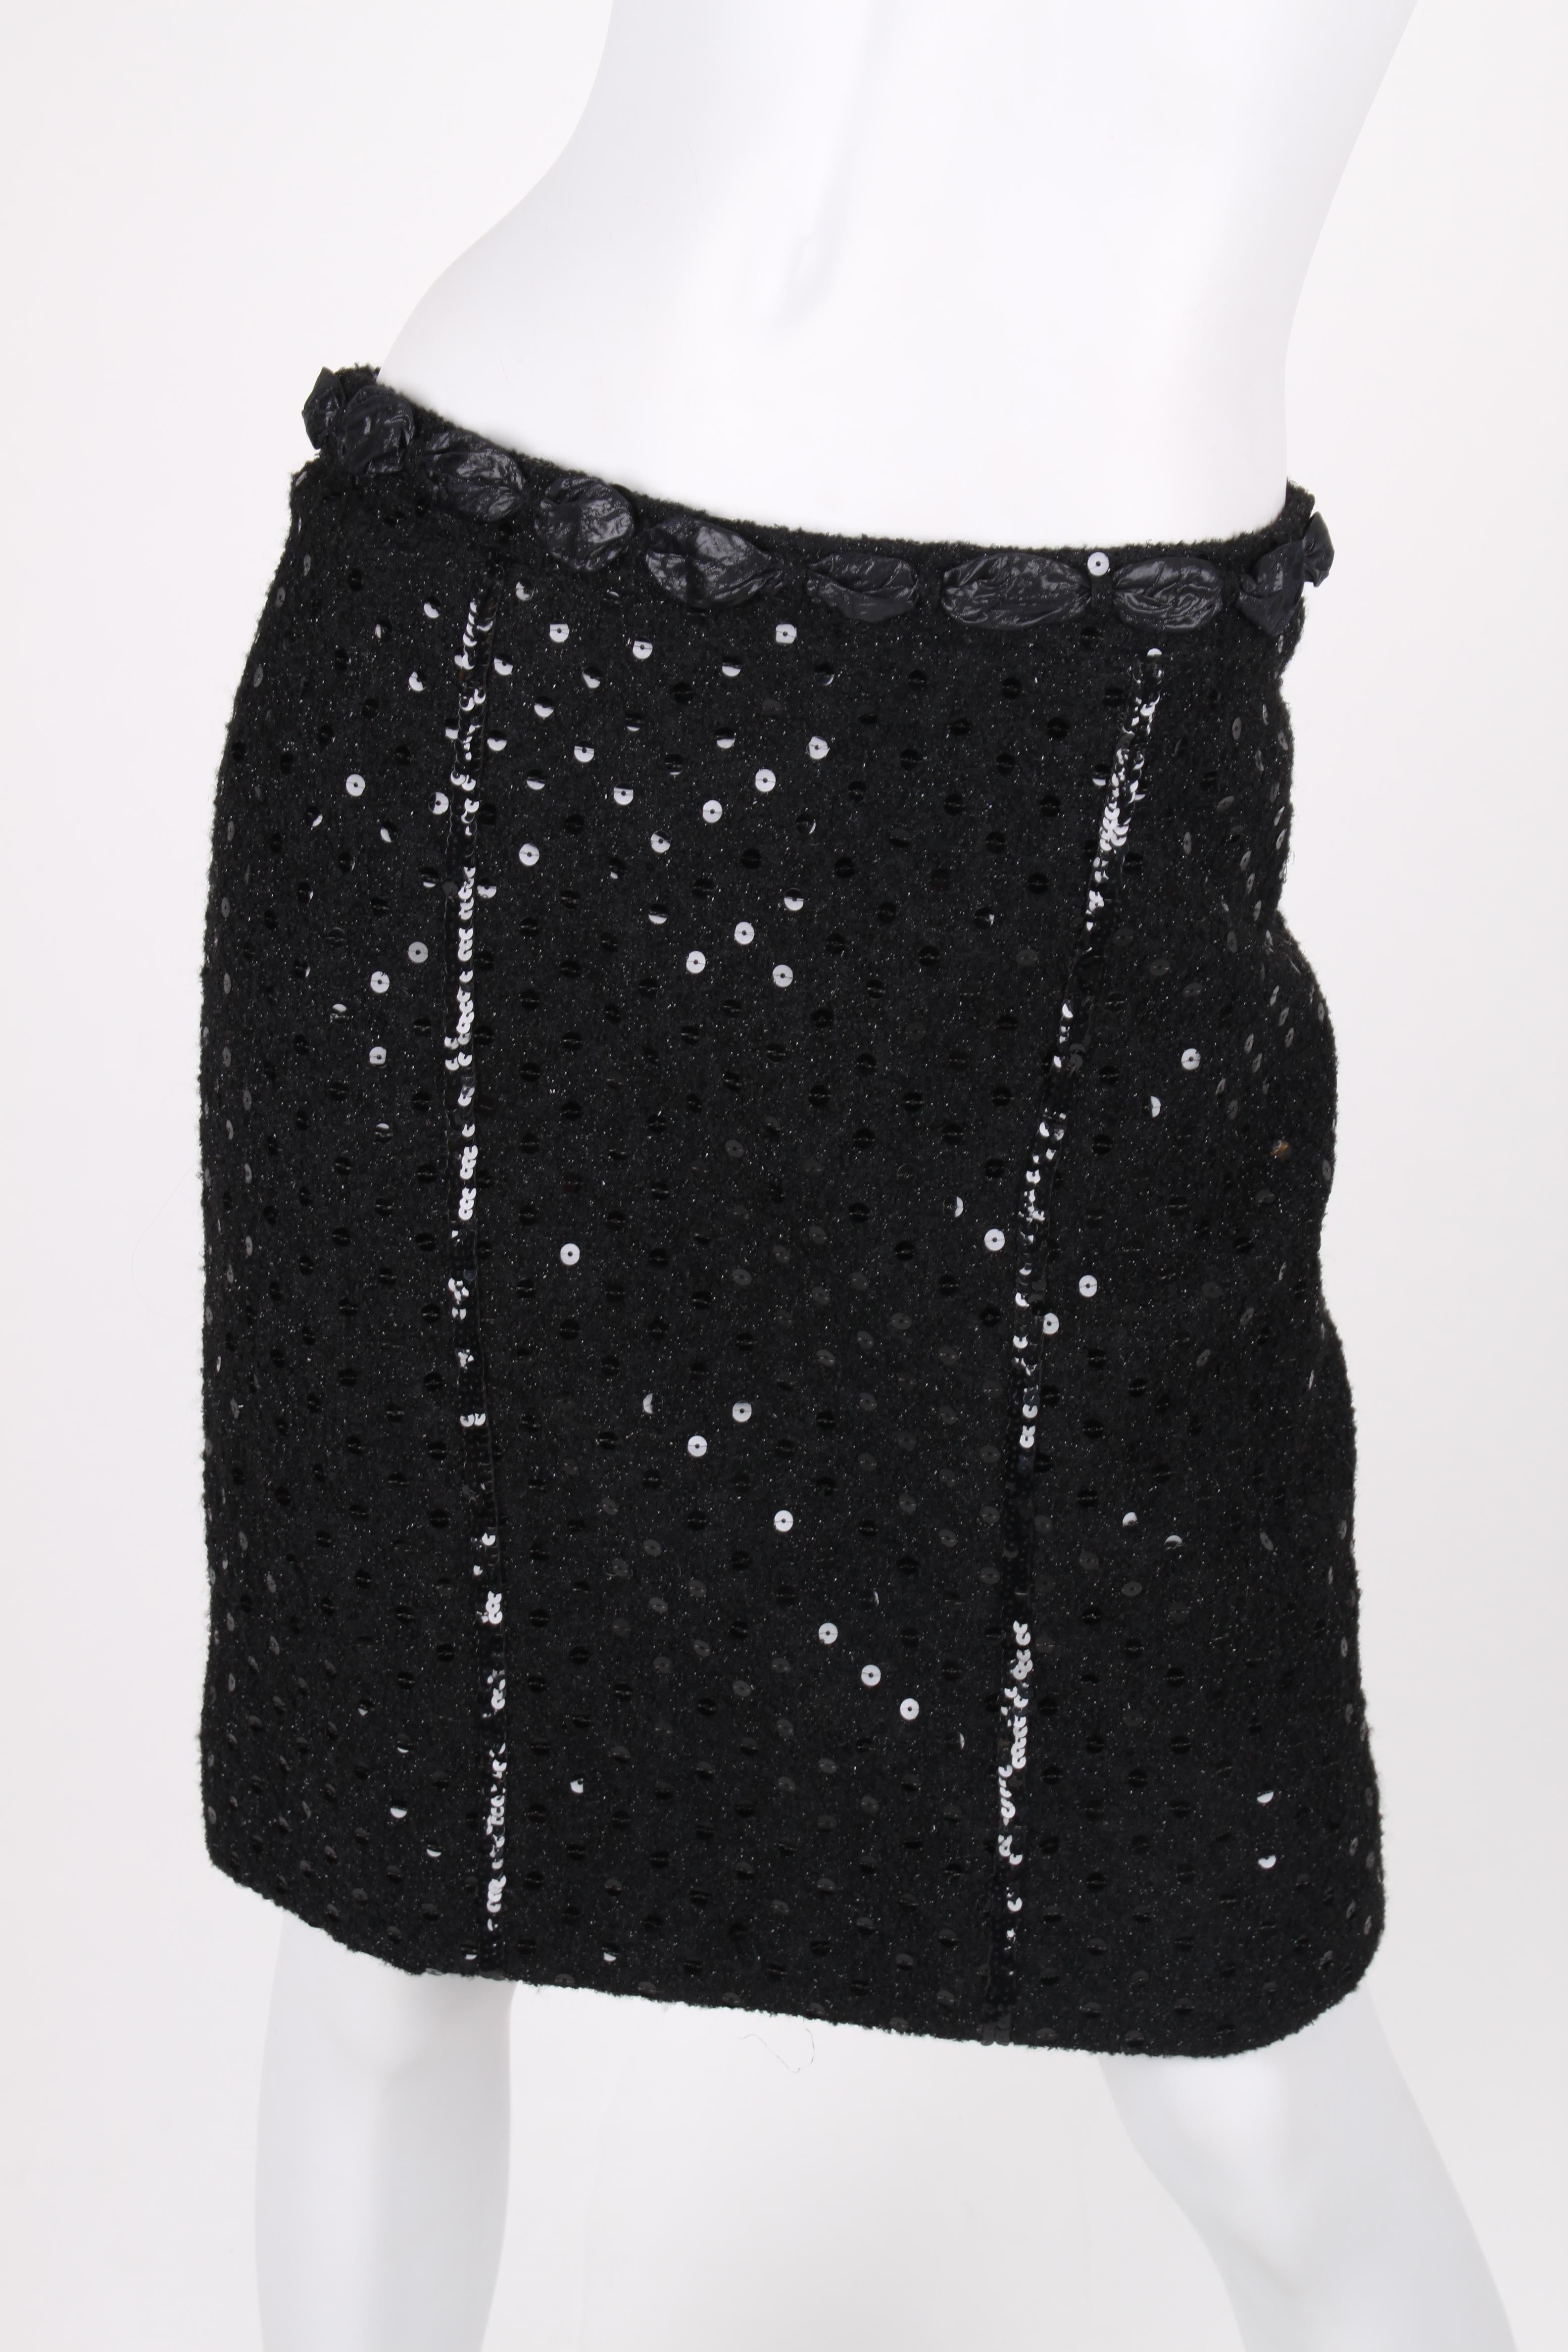 Chanel 2-pcs Sequin Suit Jacket & Skirt - black 1983 5